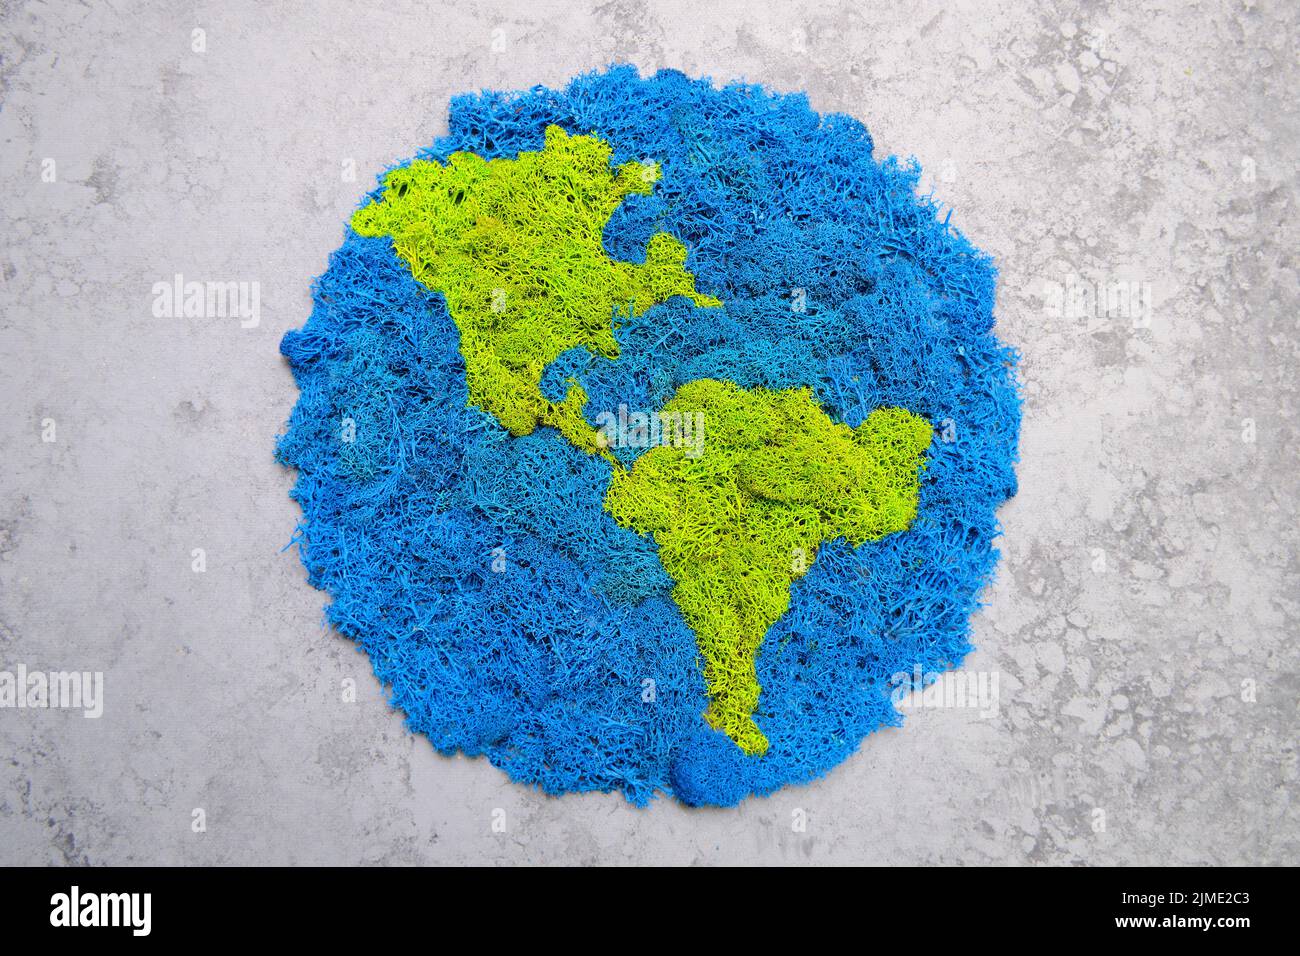 Planet Erde und Kontinente, stabilisiertes gemaltes Moos, grauer Hintergrund Stockfoto